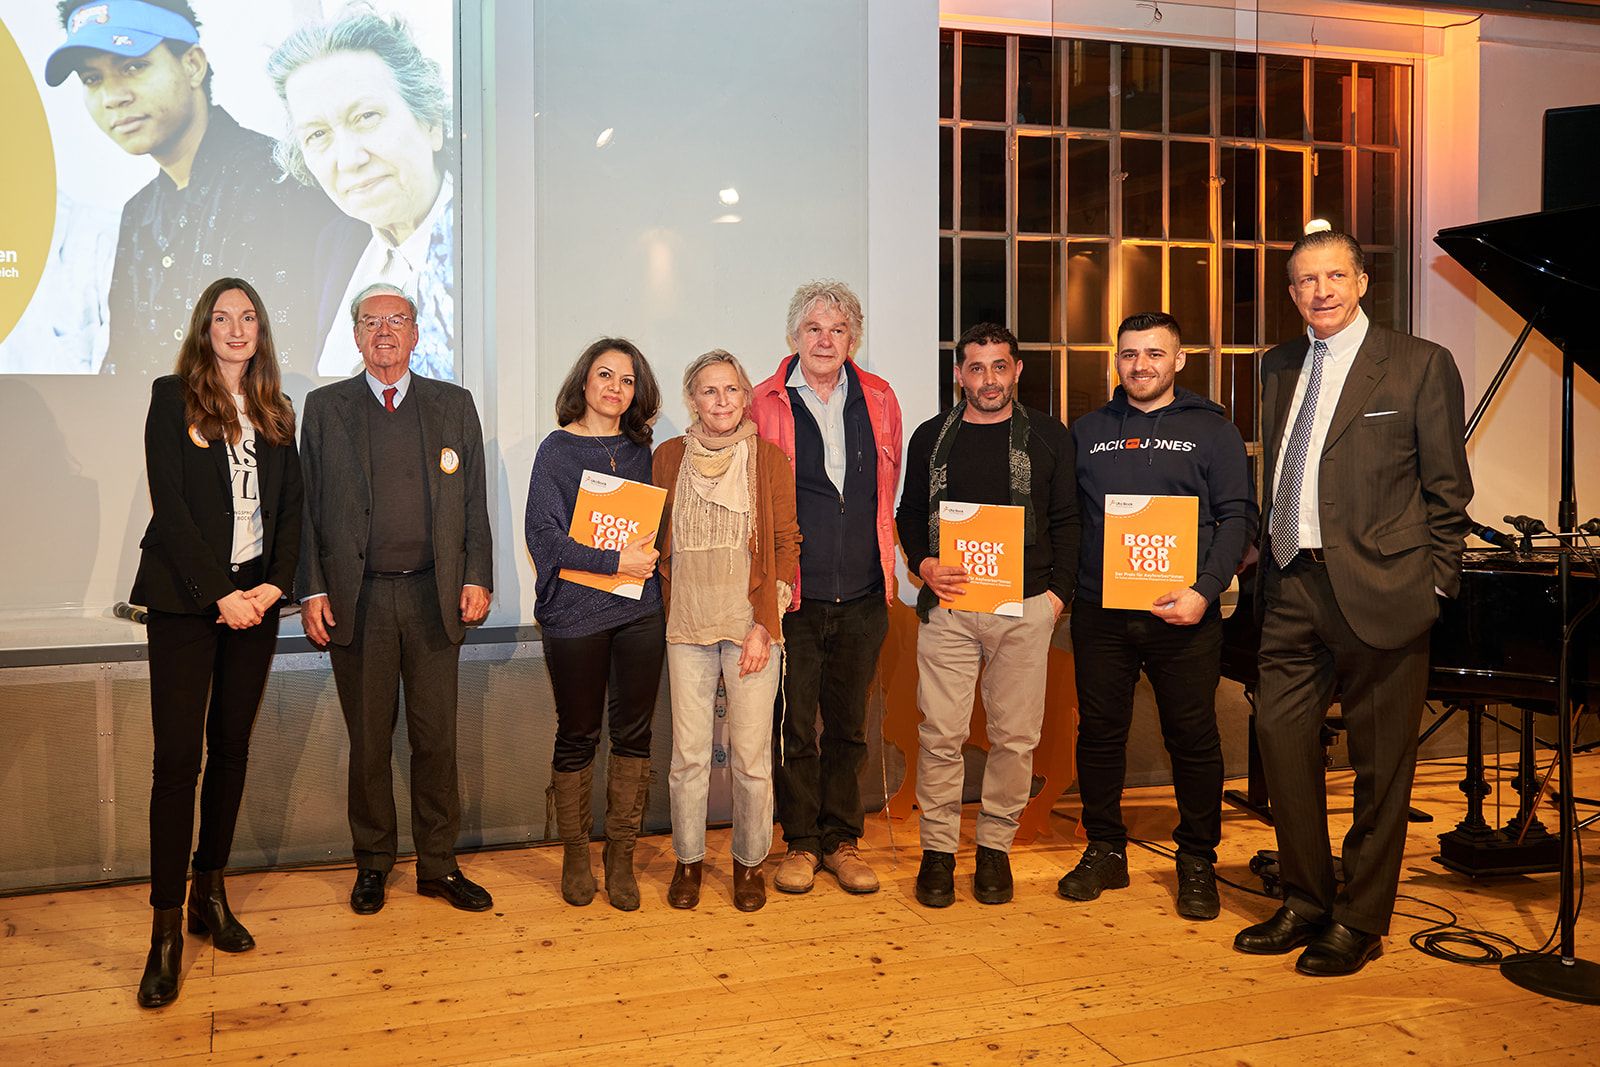 Gewinner, Jury und Vertreter des Flüchtlingsprojekts bei der Verleihung von Bock For You